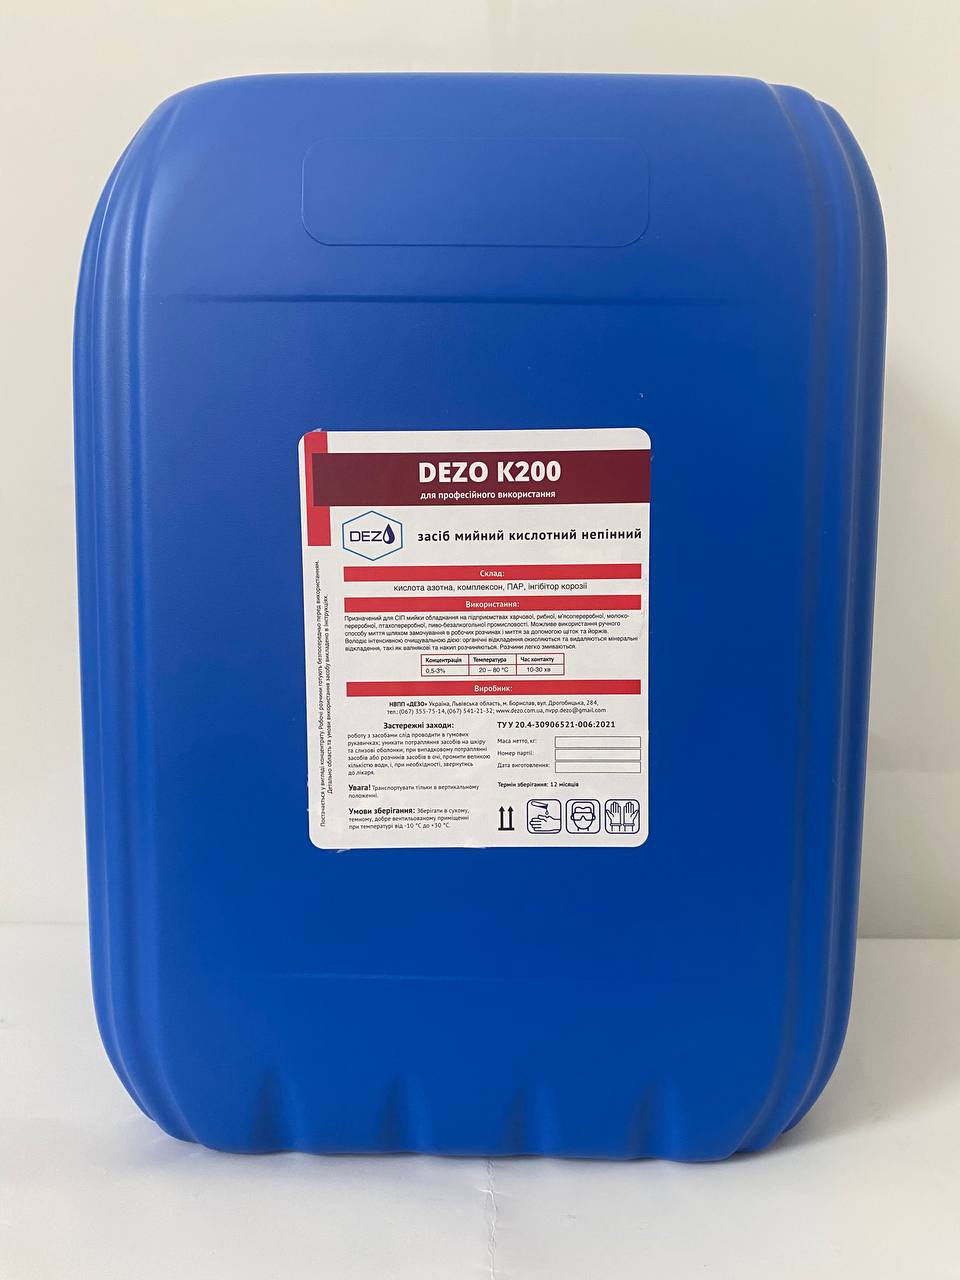 Засіб мийний кислотний непінний DEZO К200, 24 кг